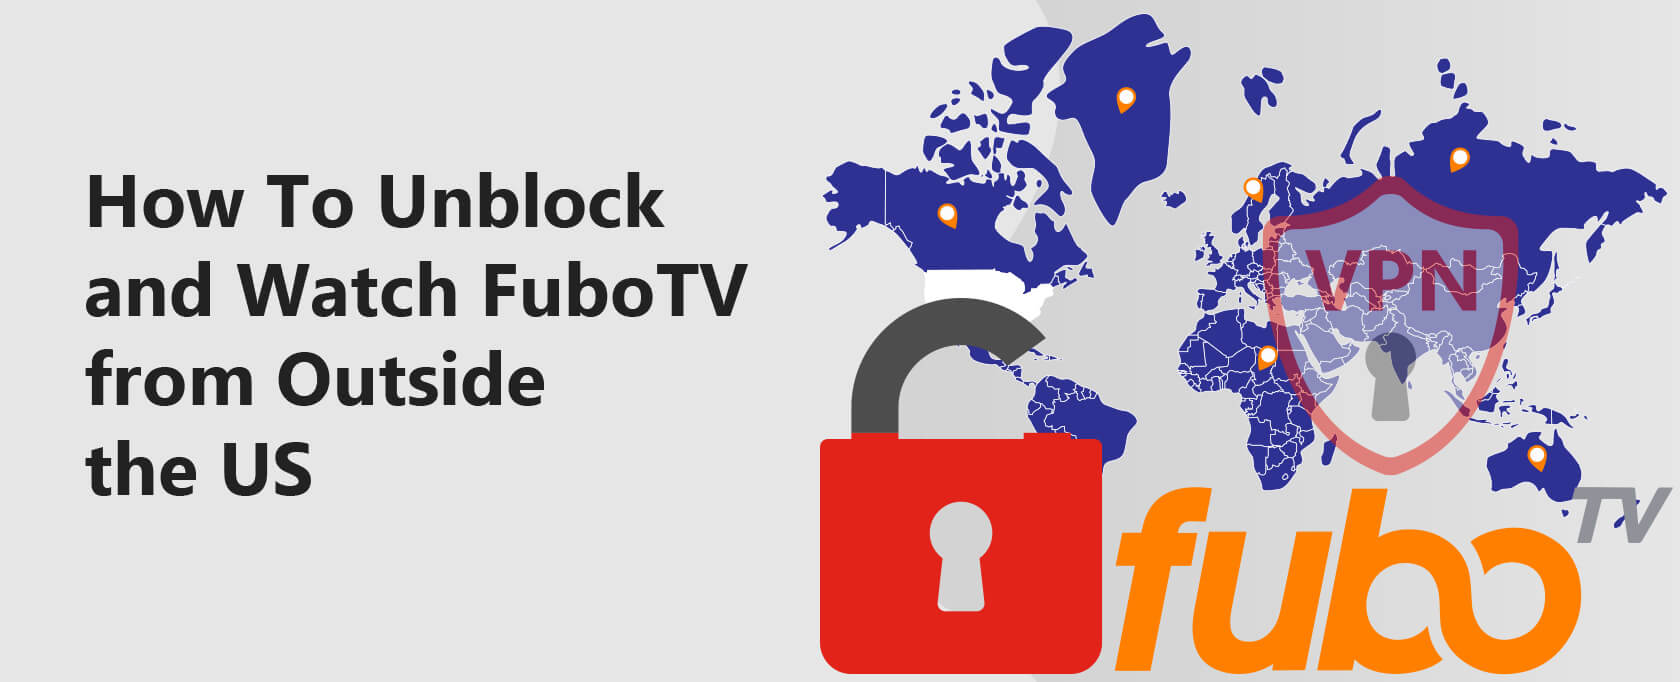 Unblock FuboTV